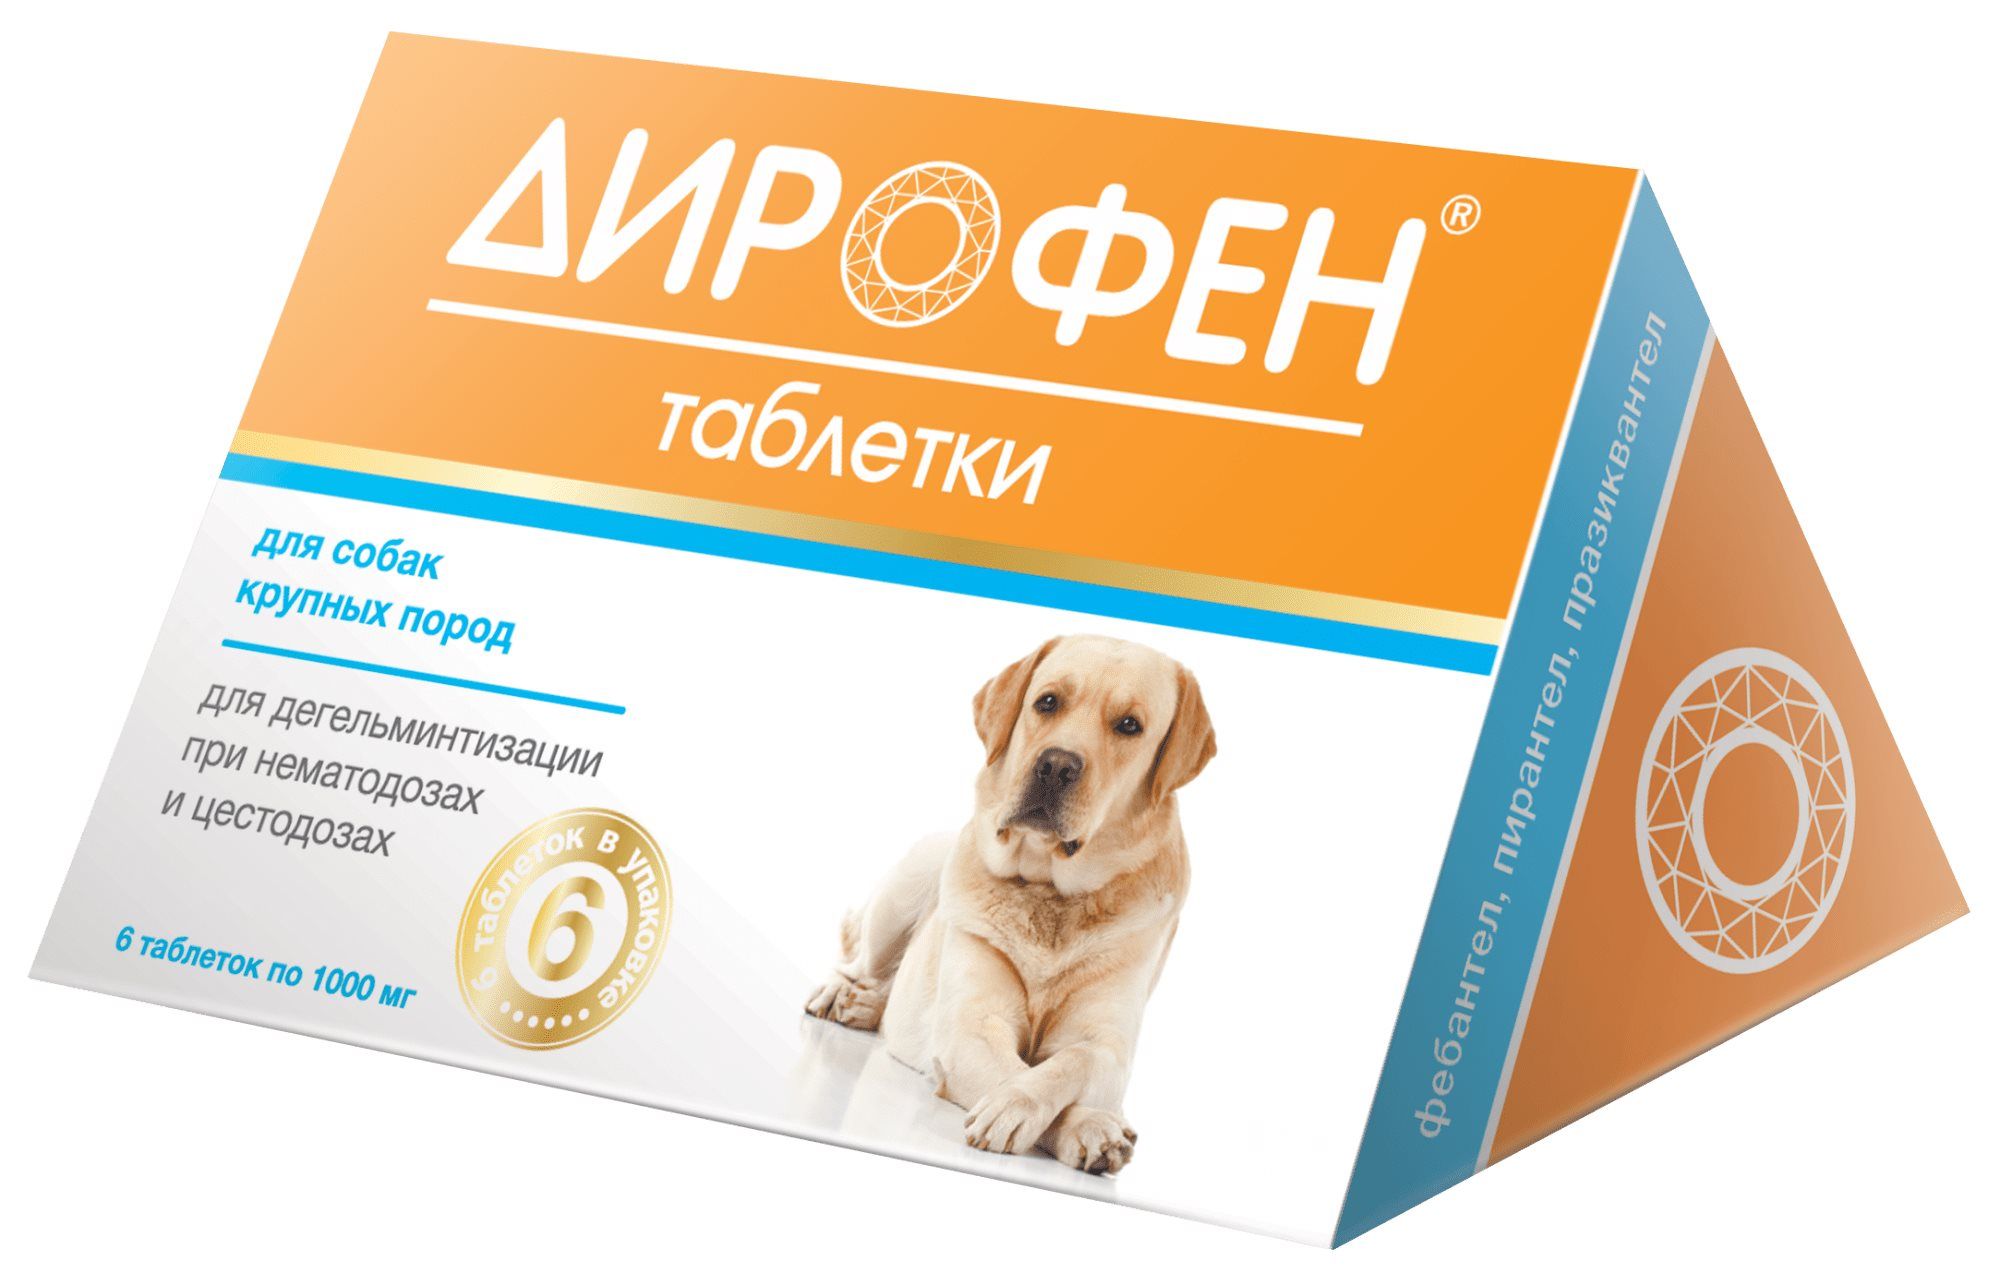 Дирофен таблетки для собак мелких. Дирофен таблетки для собак. Таблетки от паразитов для собак Дирофен. Дирофен суспензия для щенков. Дирофен таблетки (для кошек и собак мелких и средних пород), 6*200 мг.